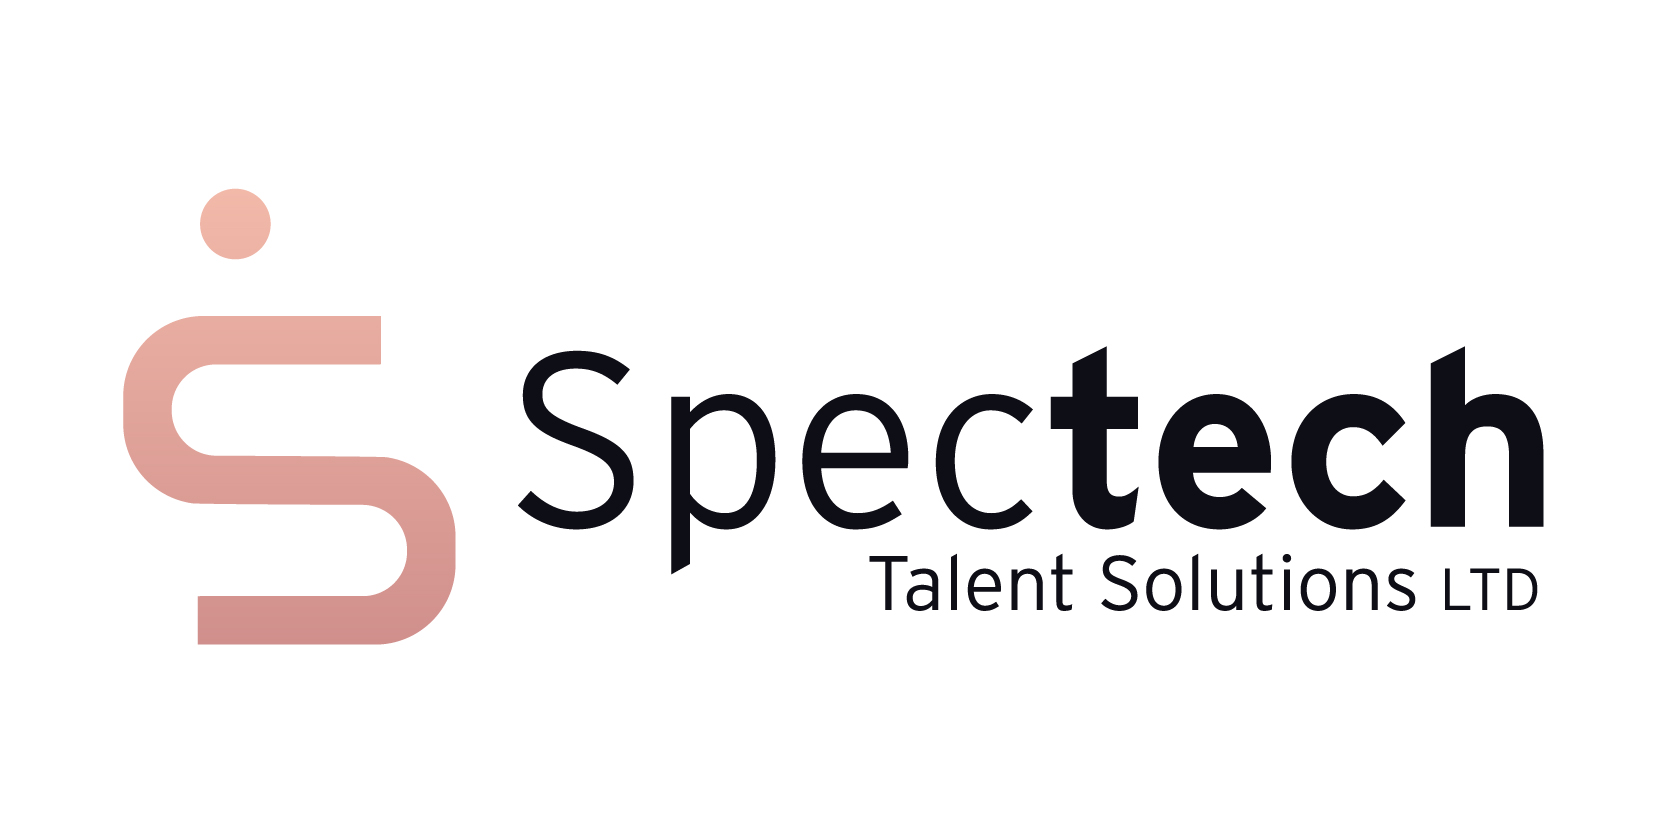 Spectech Talent Solutions Ltd